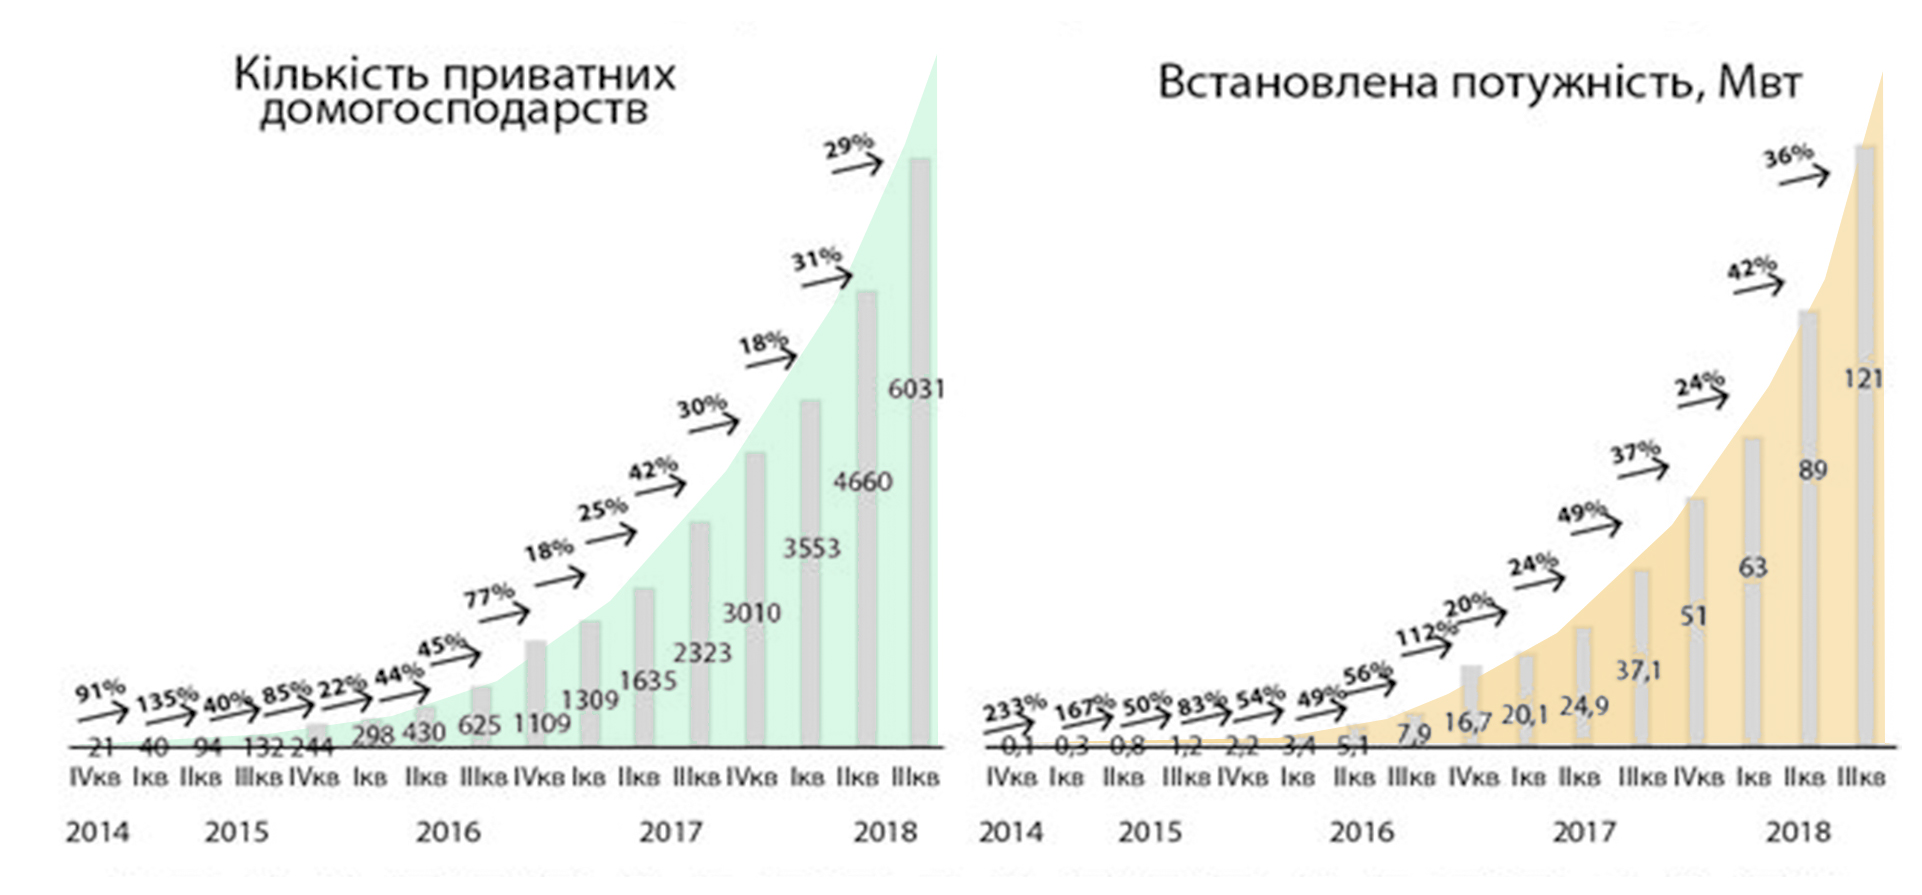 Рис 7. Динамика увеличения количества солнечных электроустановок частных домохозяйств в Украине. Источник: Госэнергоэффективности Украины, 2018.